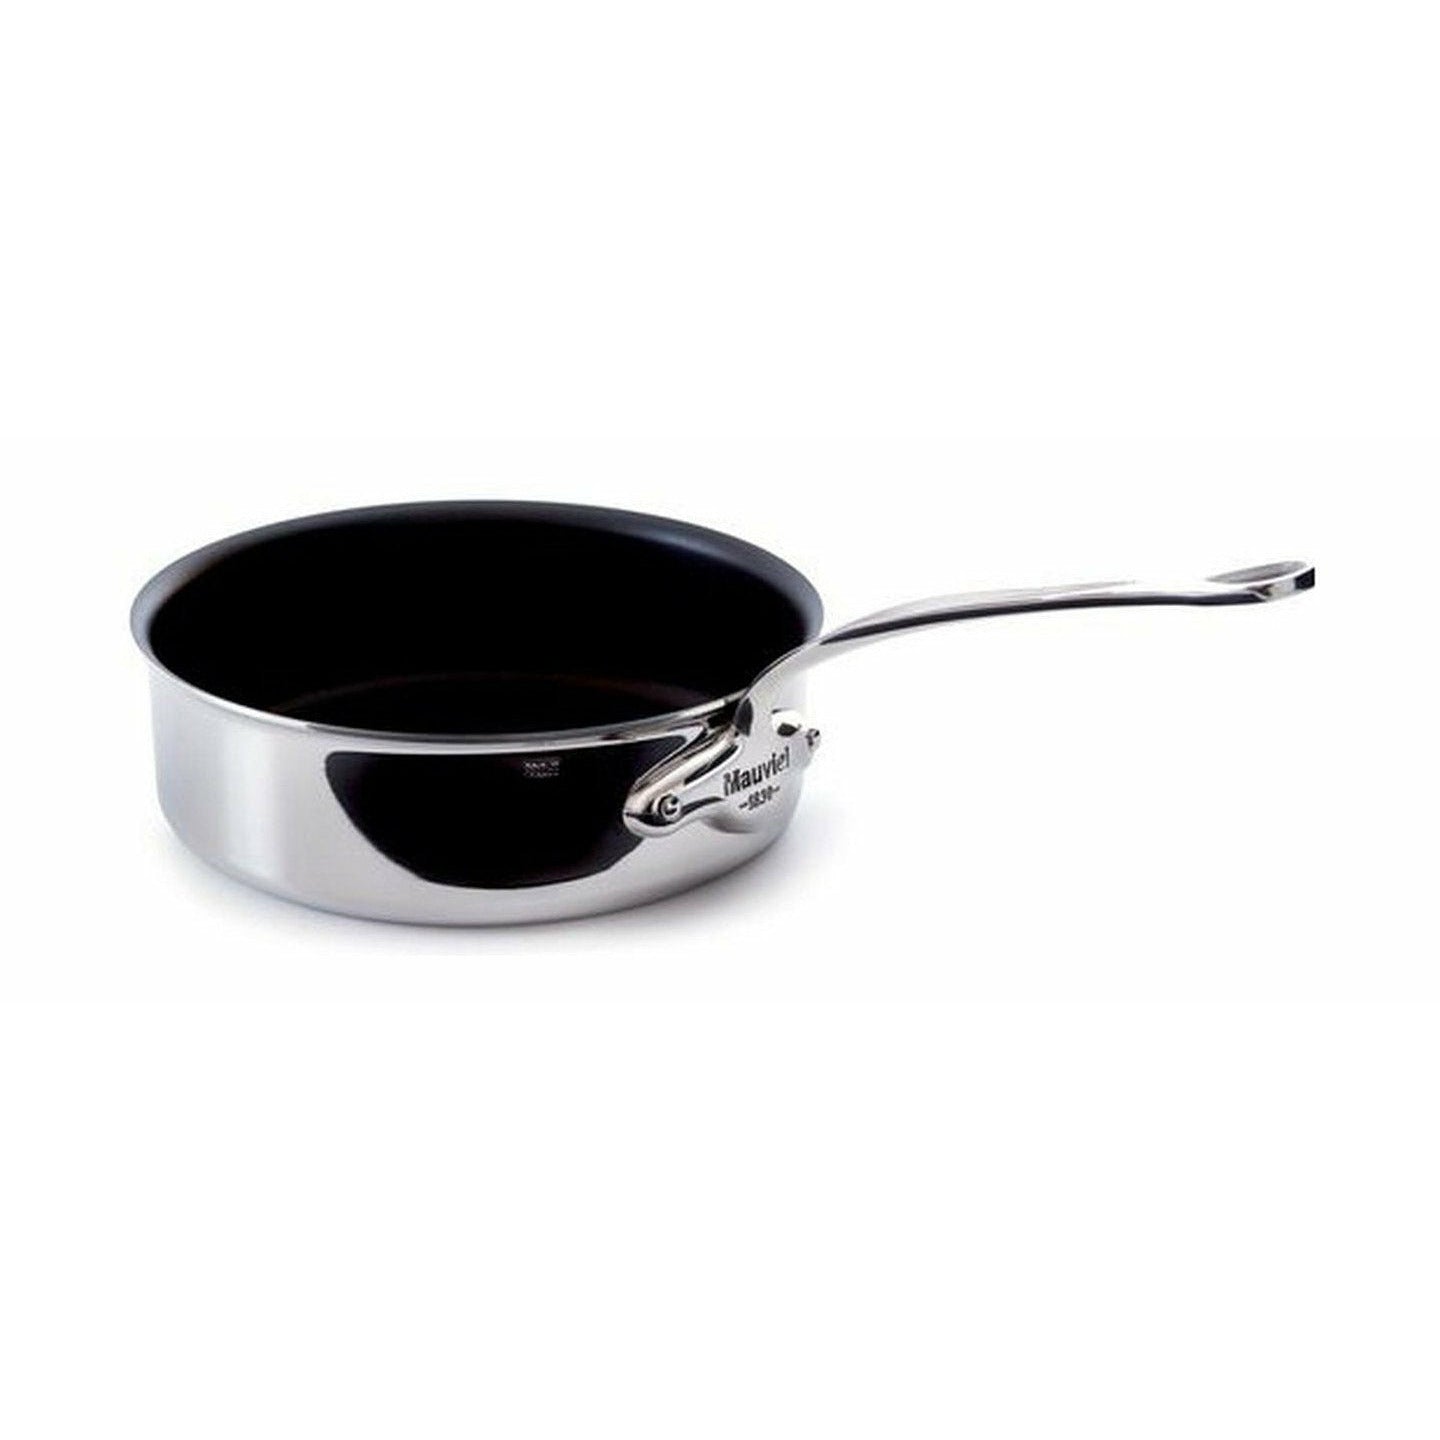 Mauviel Cook Style Sauté Pan Non Stick, ø 24 Cm